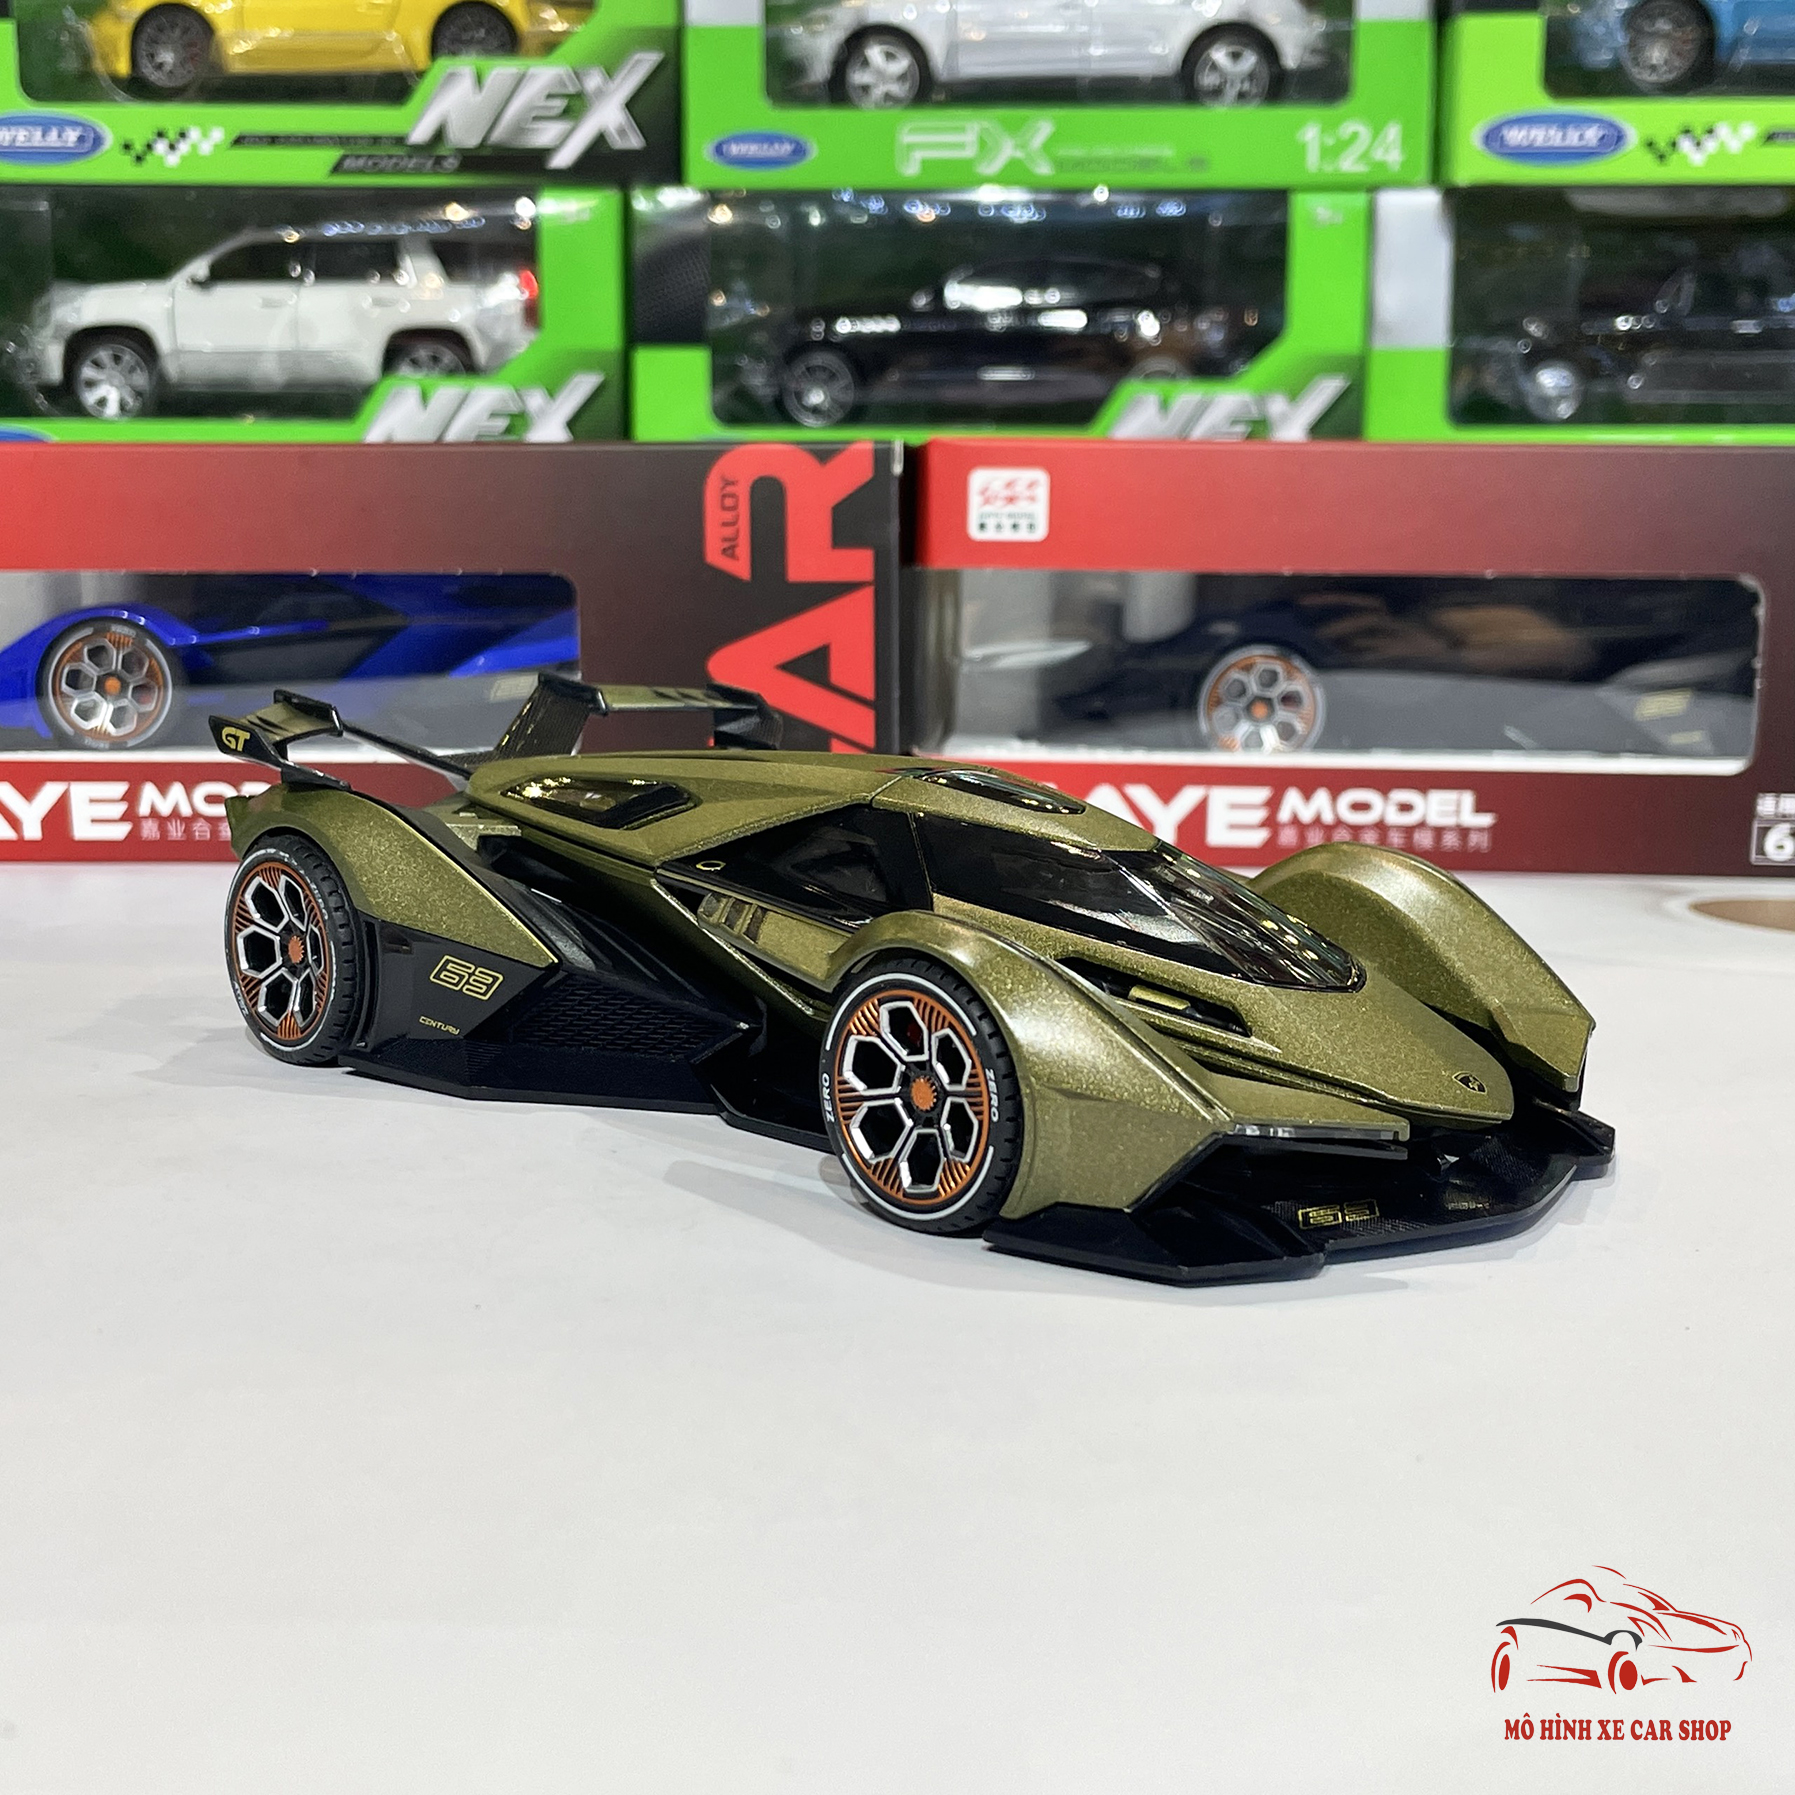 Mô hình xe kim loại siêu xe Lamborghini V12 Vision GranTurismo tỉ lệ 1:24  hãng Jiaye 3 màu 